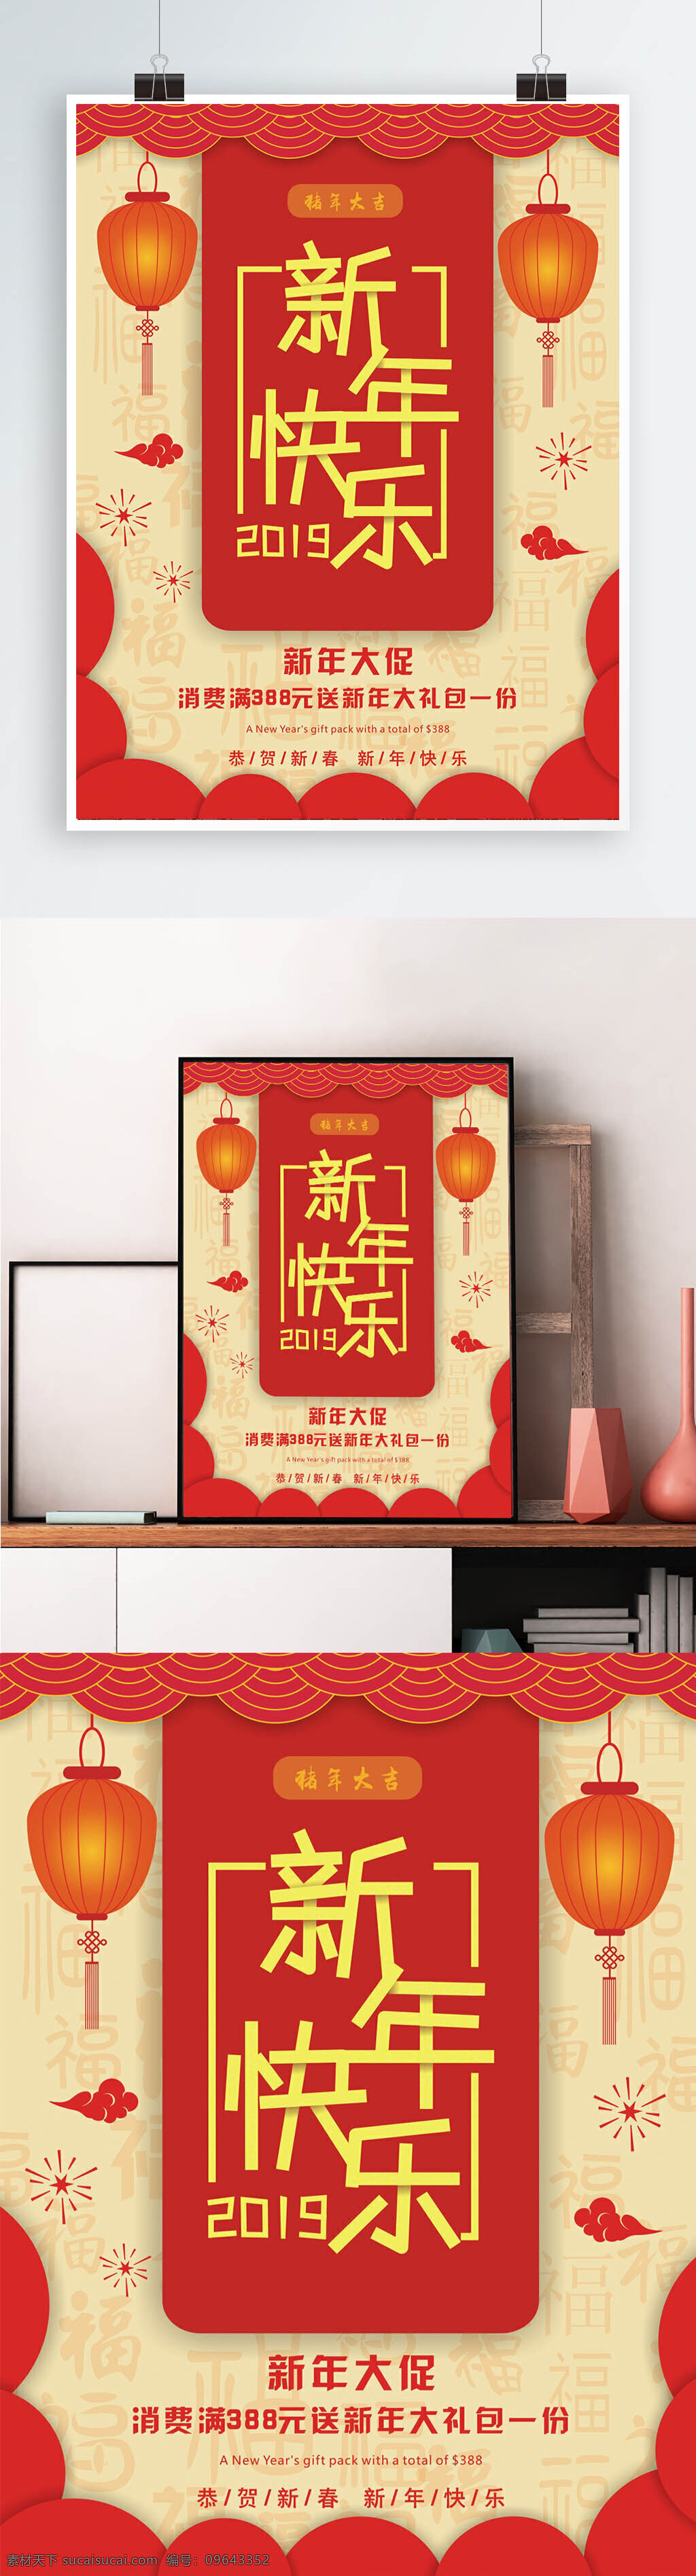 矢量 红色 新年 快乐 海报 新年快乐 促销 灯笼 中国风